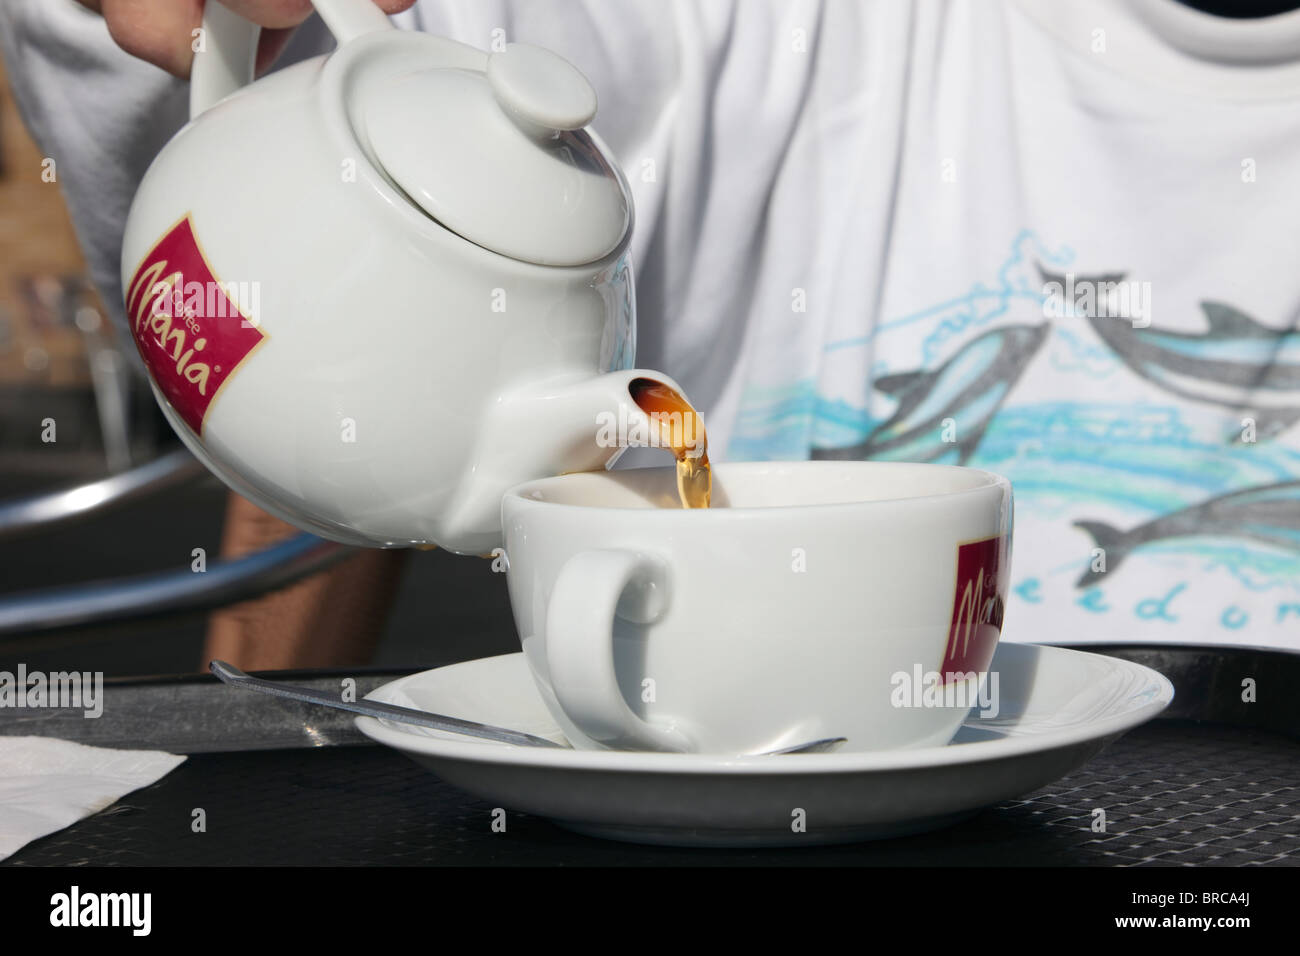 Personne dans un café de thé café Mania verser un verre d'eau dans une tasse et soucoupe. Le Royaume-Uni, l'Europe. Banque D'Images